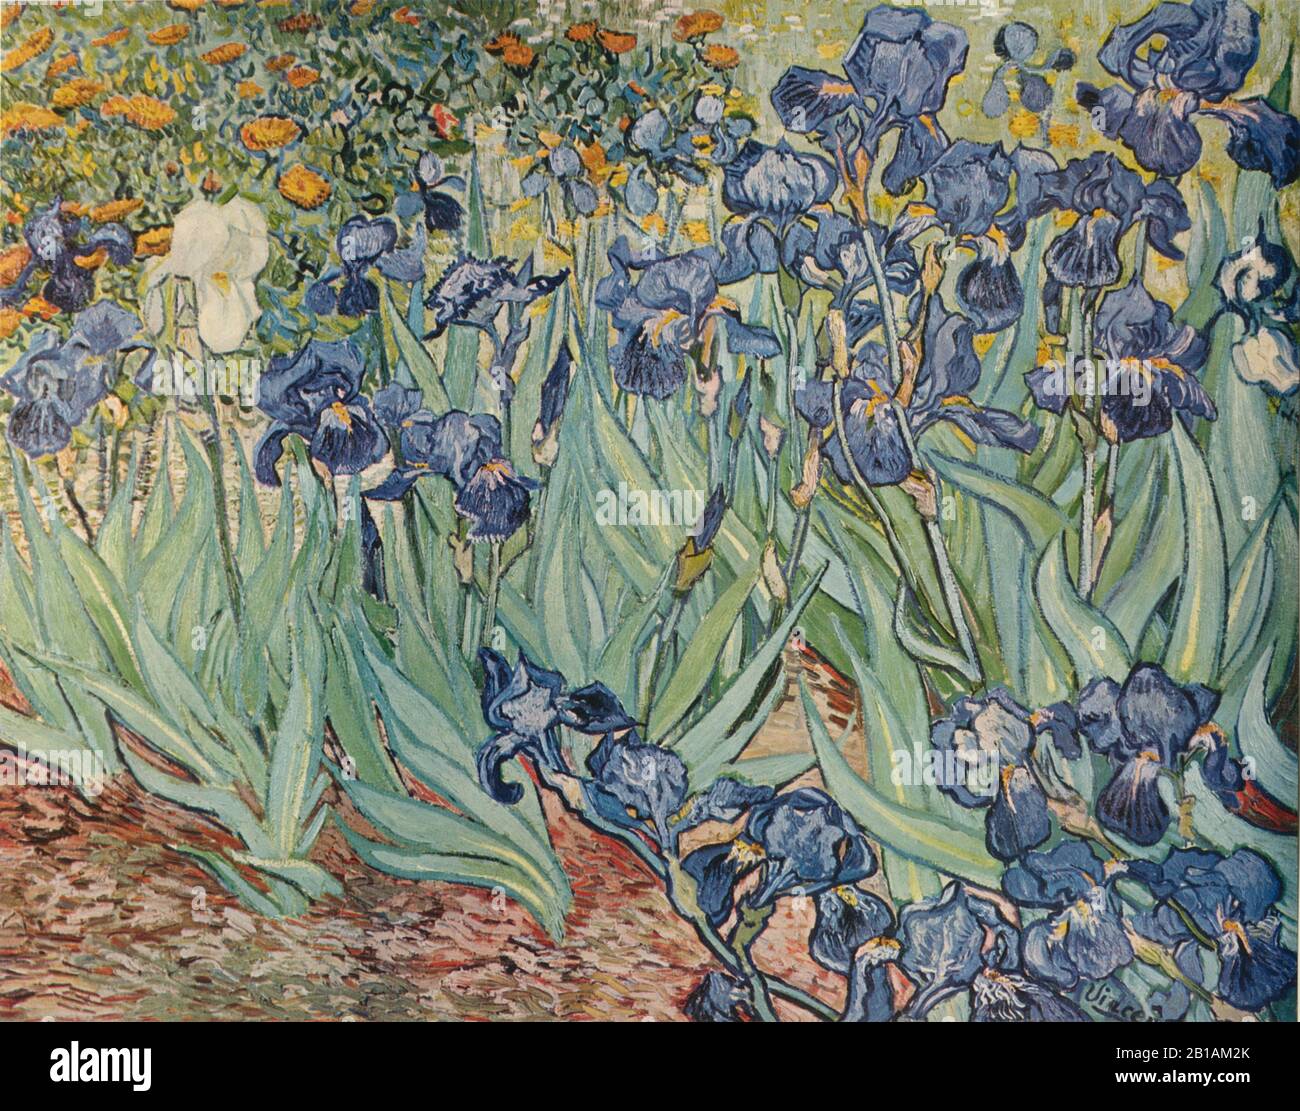 Irizes Gemälde von Vincent van Gogh aus dem Jahr 1889 - Sehr hohe Auflösung und Qualitätsbild Stockfoto